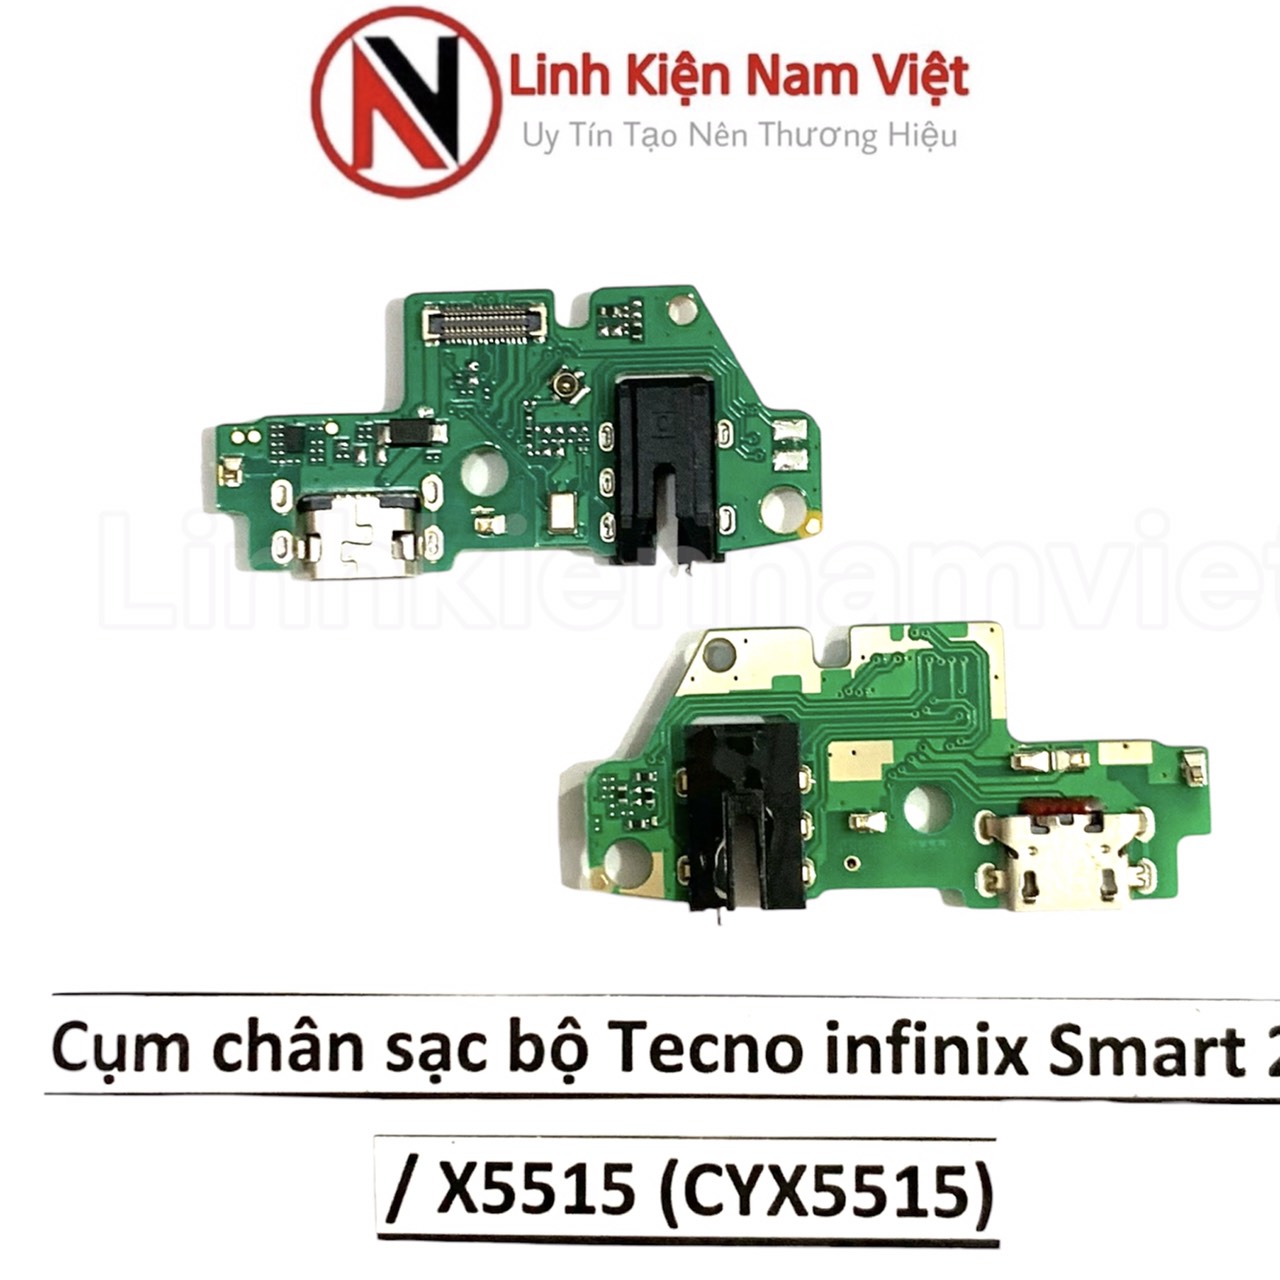 Cụm chân sạc bộ Tecno infinix Smart 2 / X5515 (CYX5515)